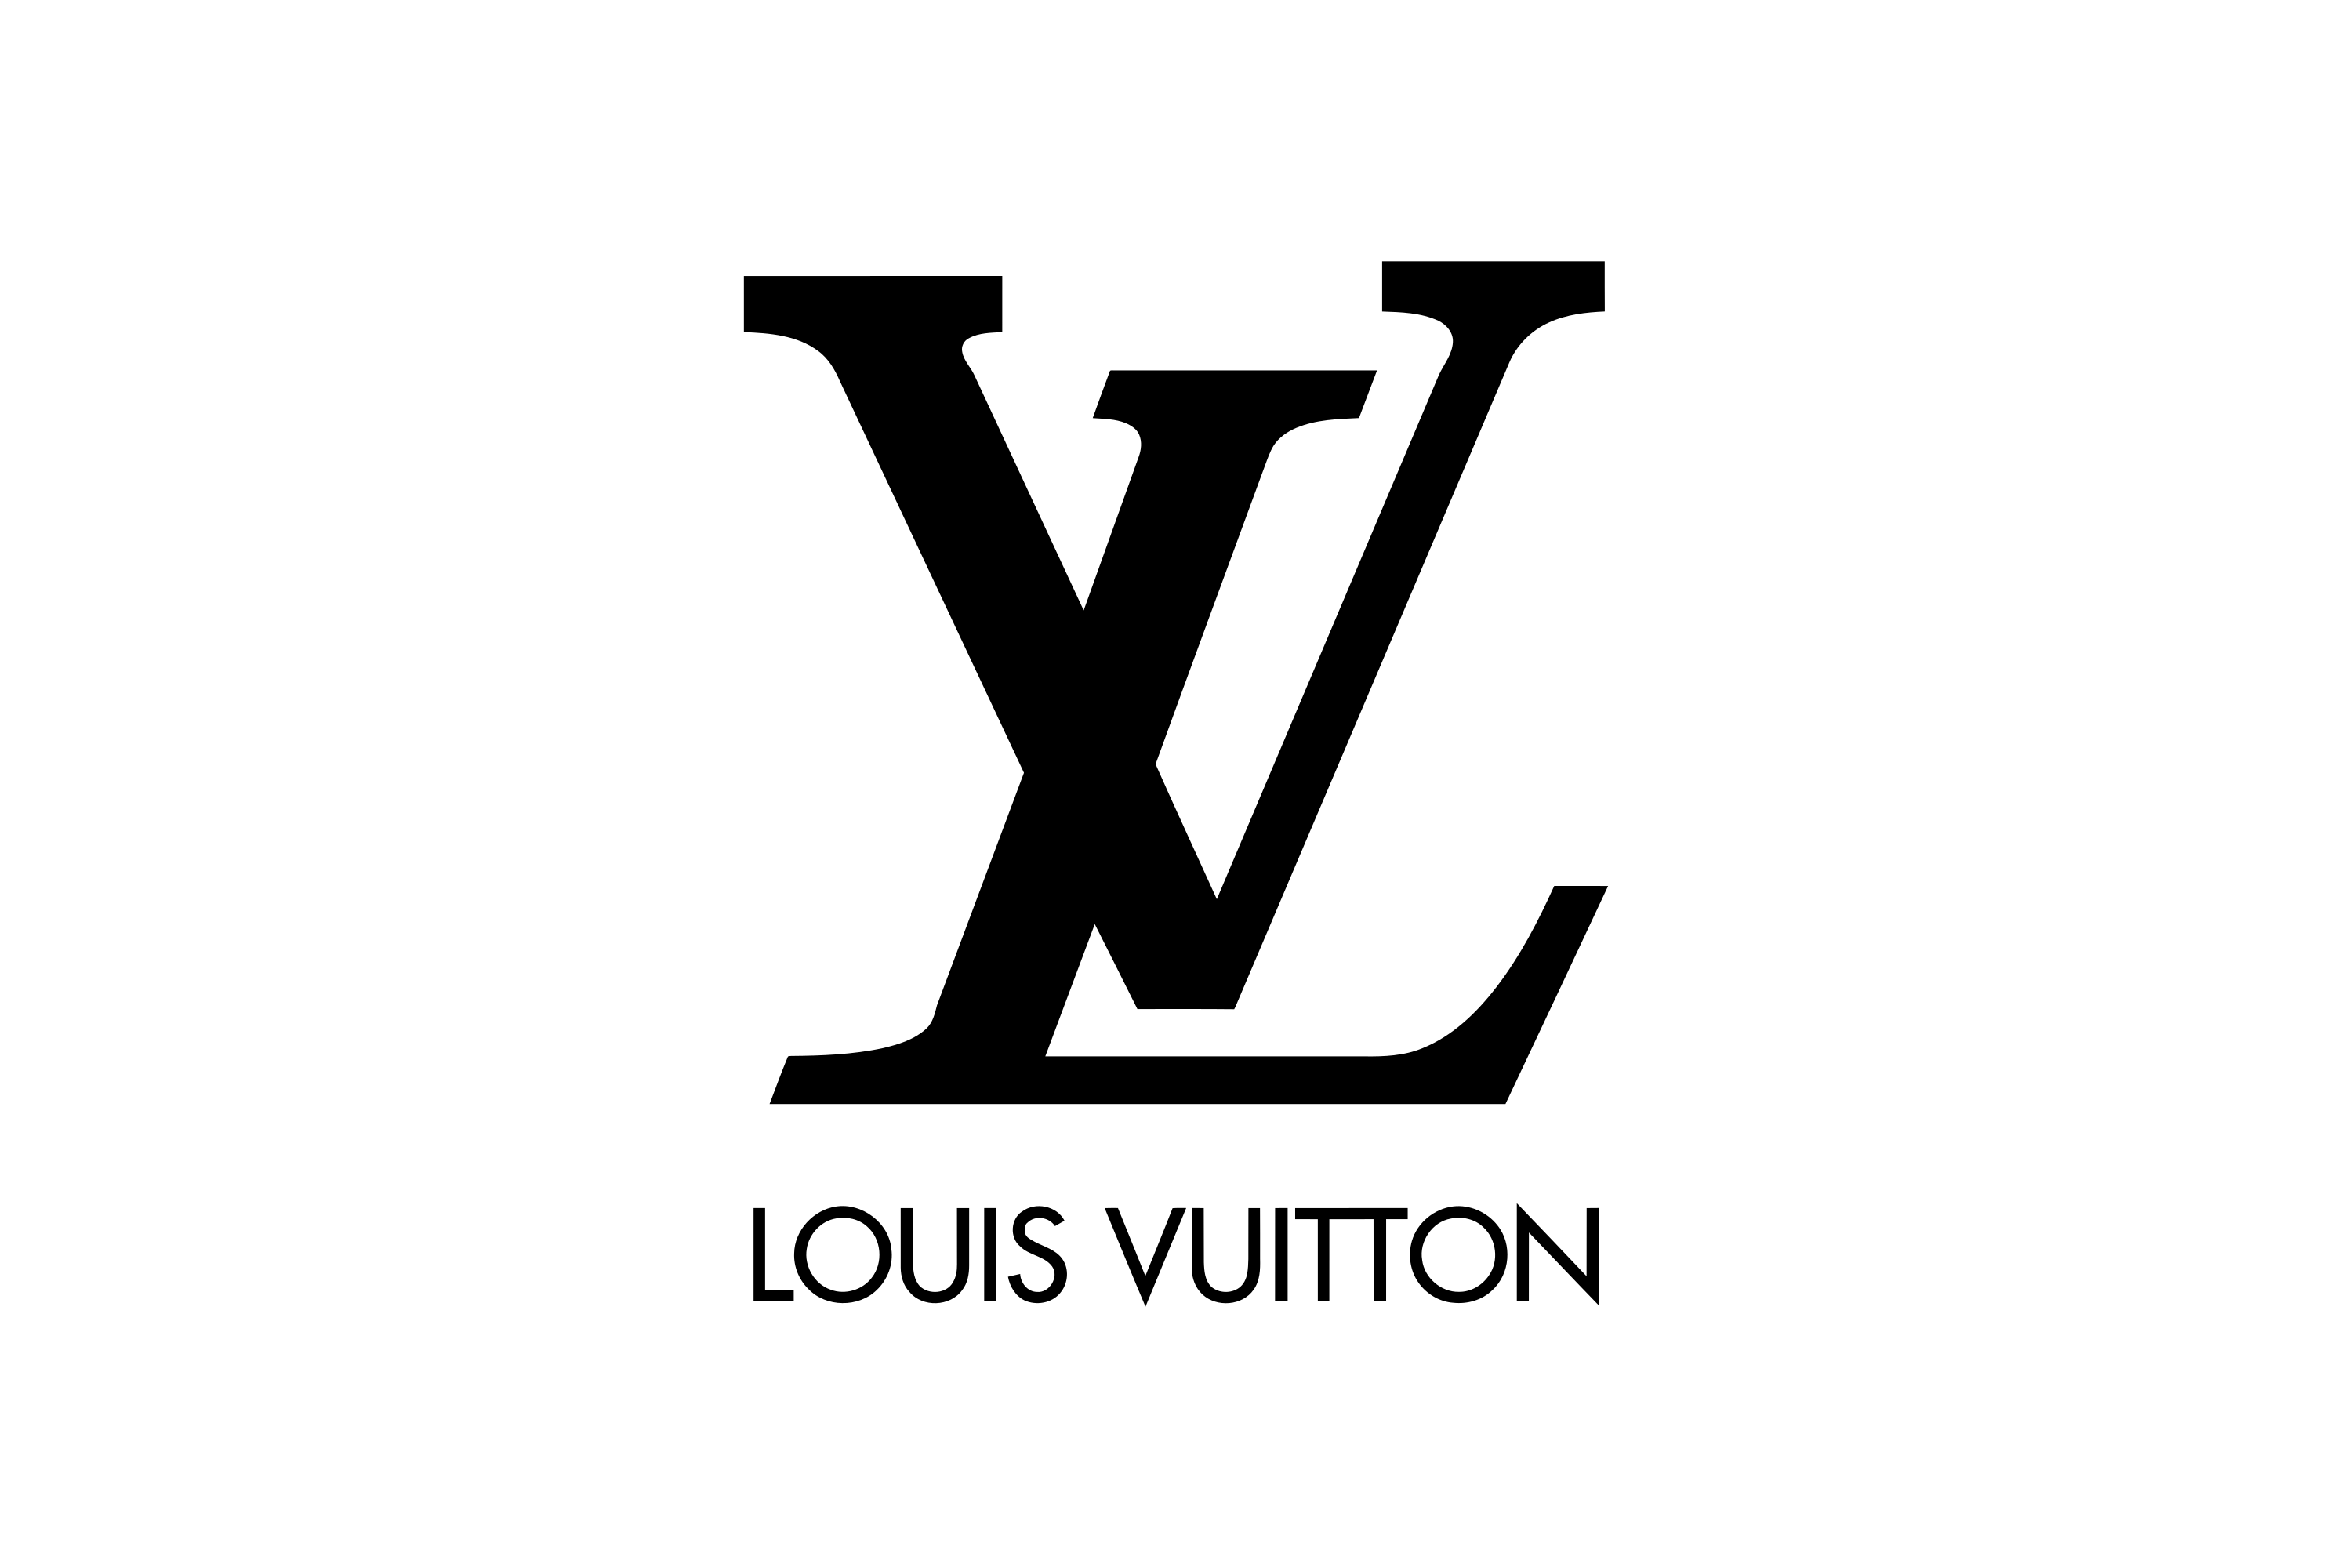 Download Vuitton Monogram Fashion Louis Rock Handbag Pattern HQ PNG Image